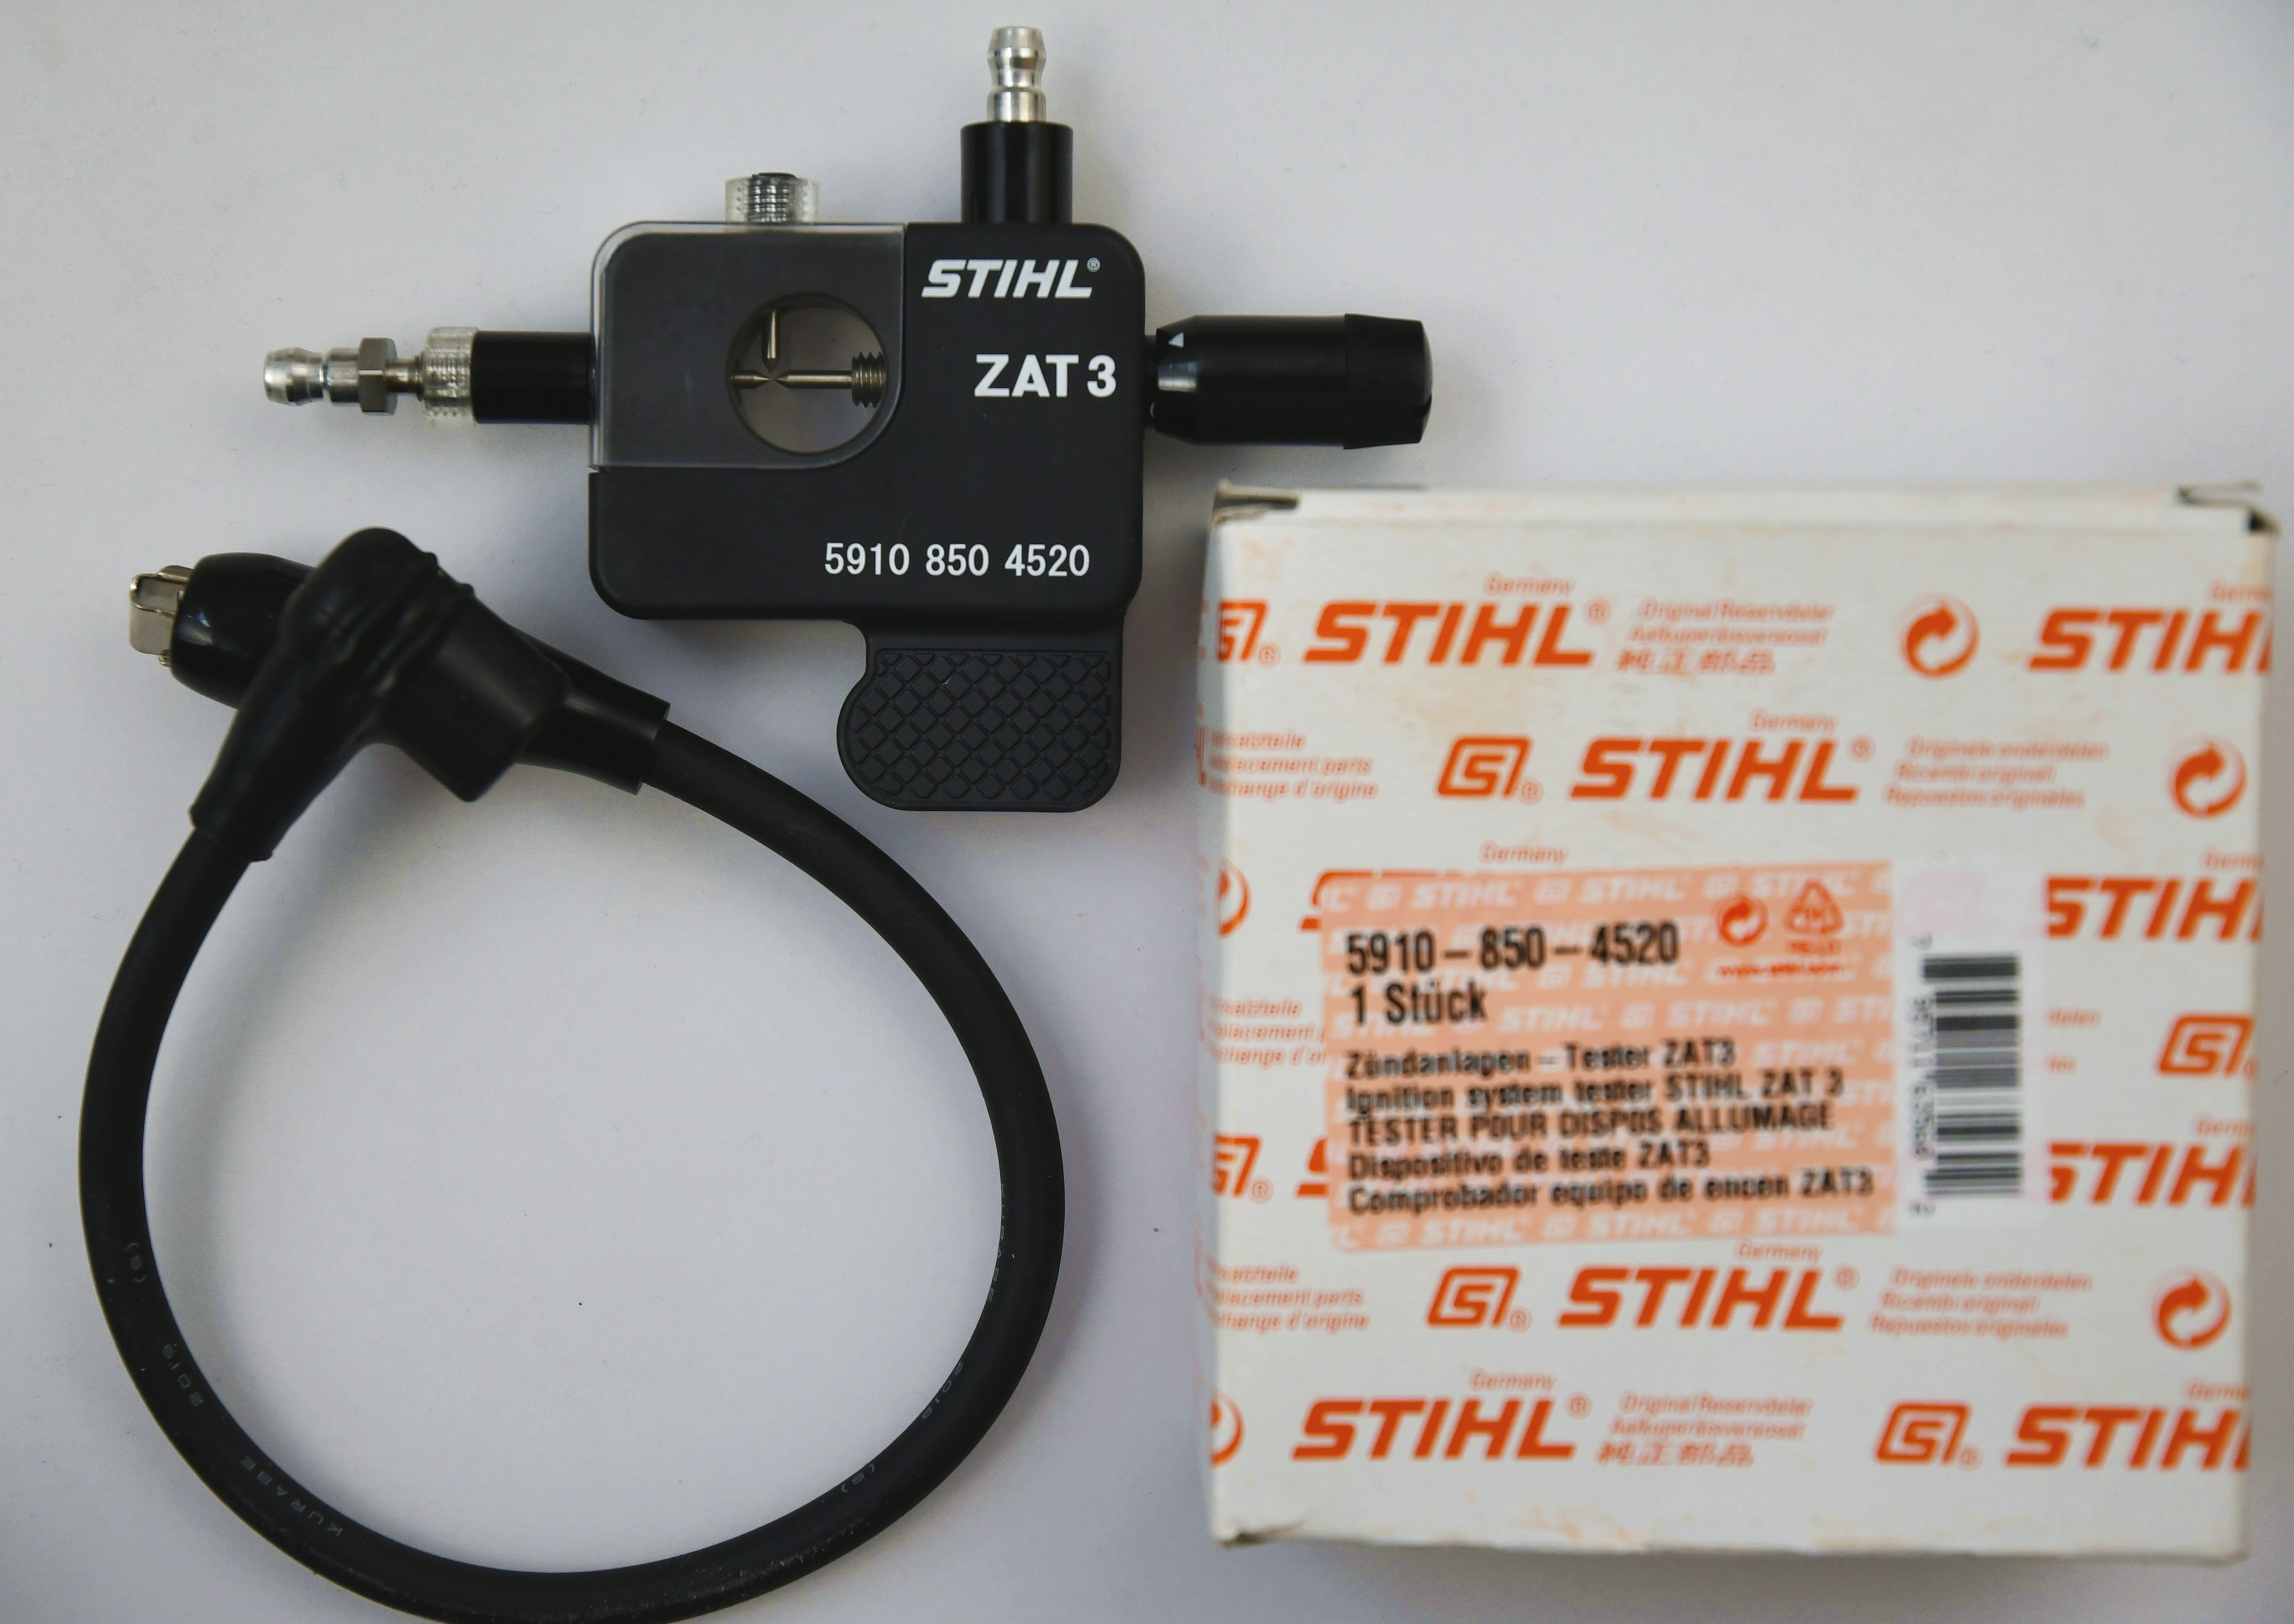  Stihl 59108504520  Original  Werkzeug ZAT3 //Zündanlagentester// Zündanlagenprüfer